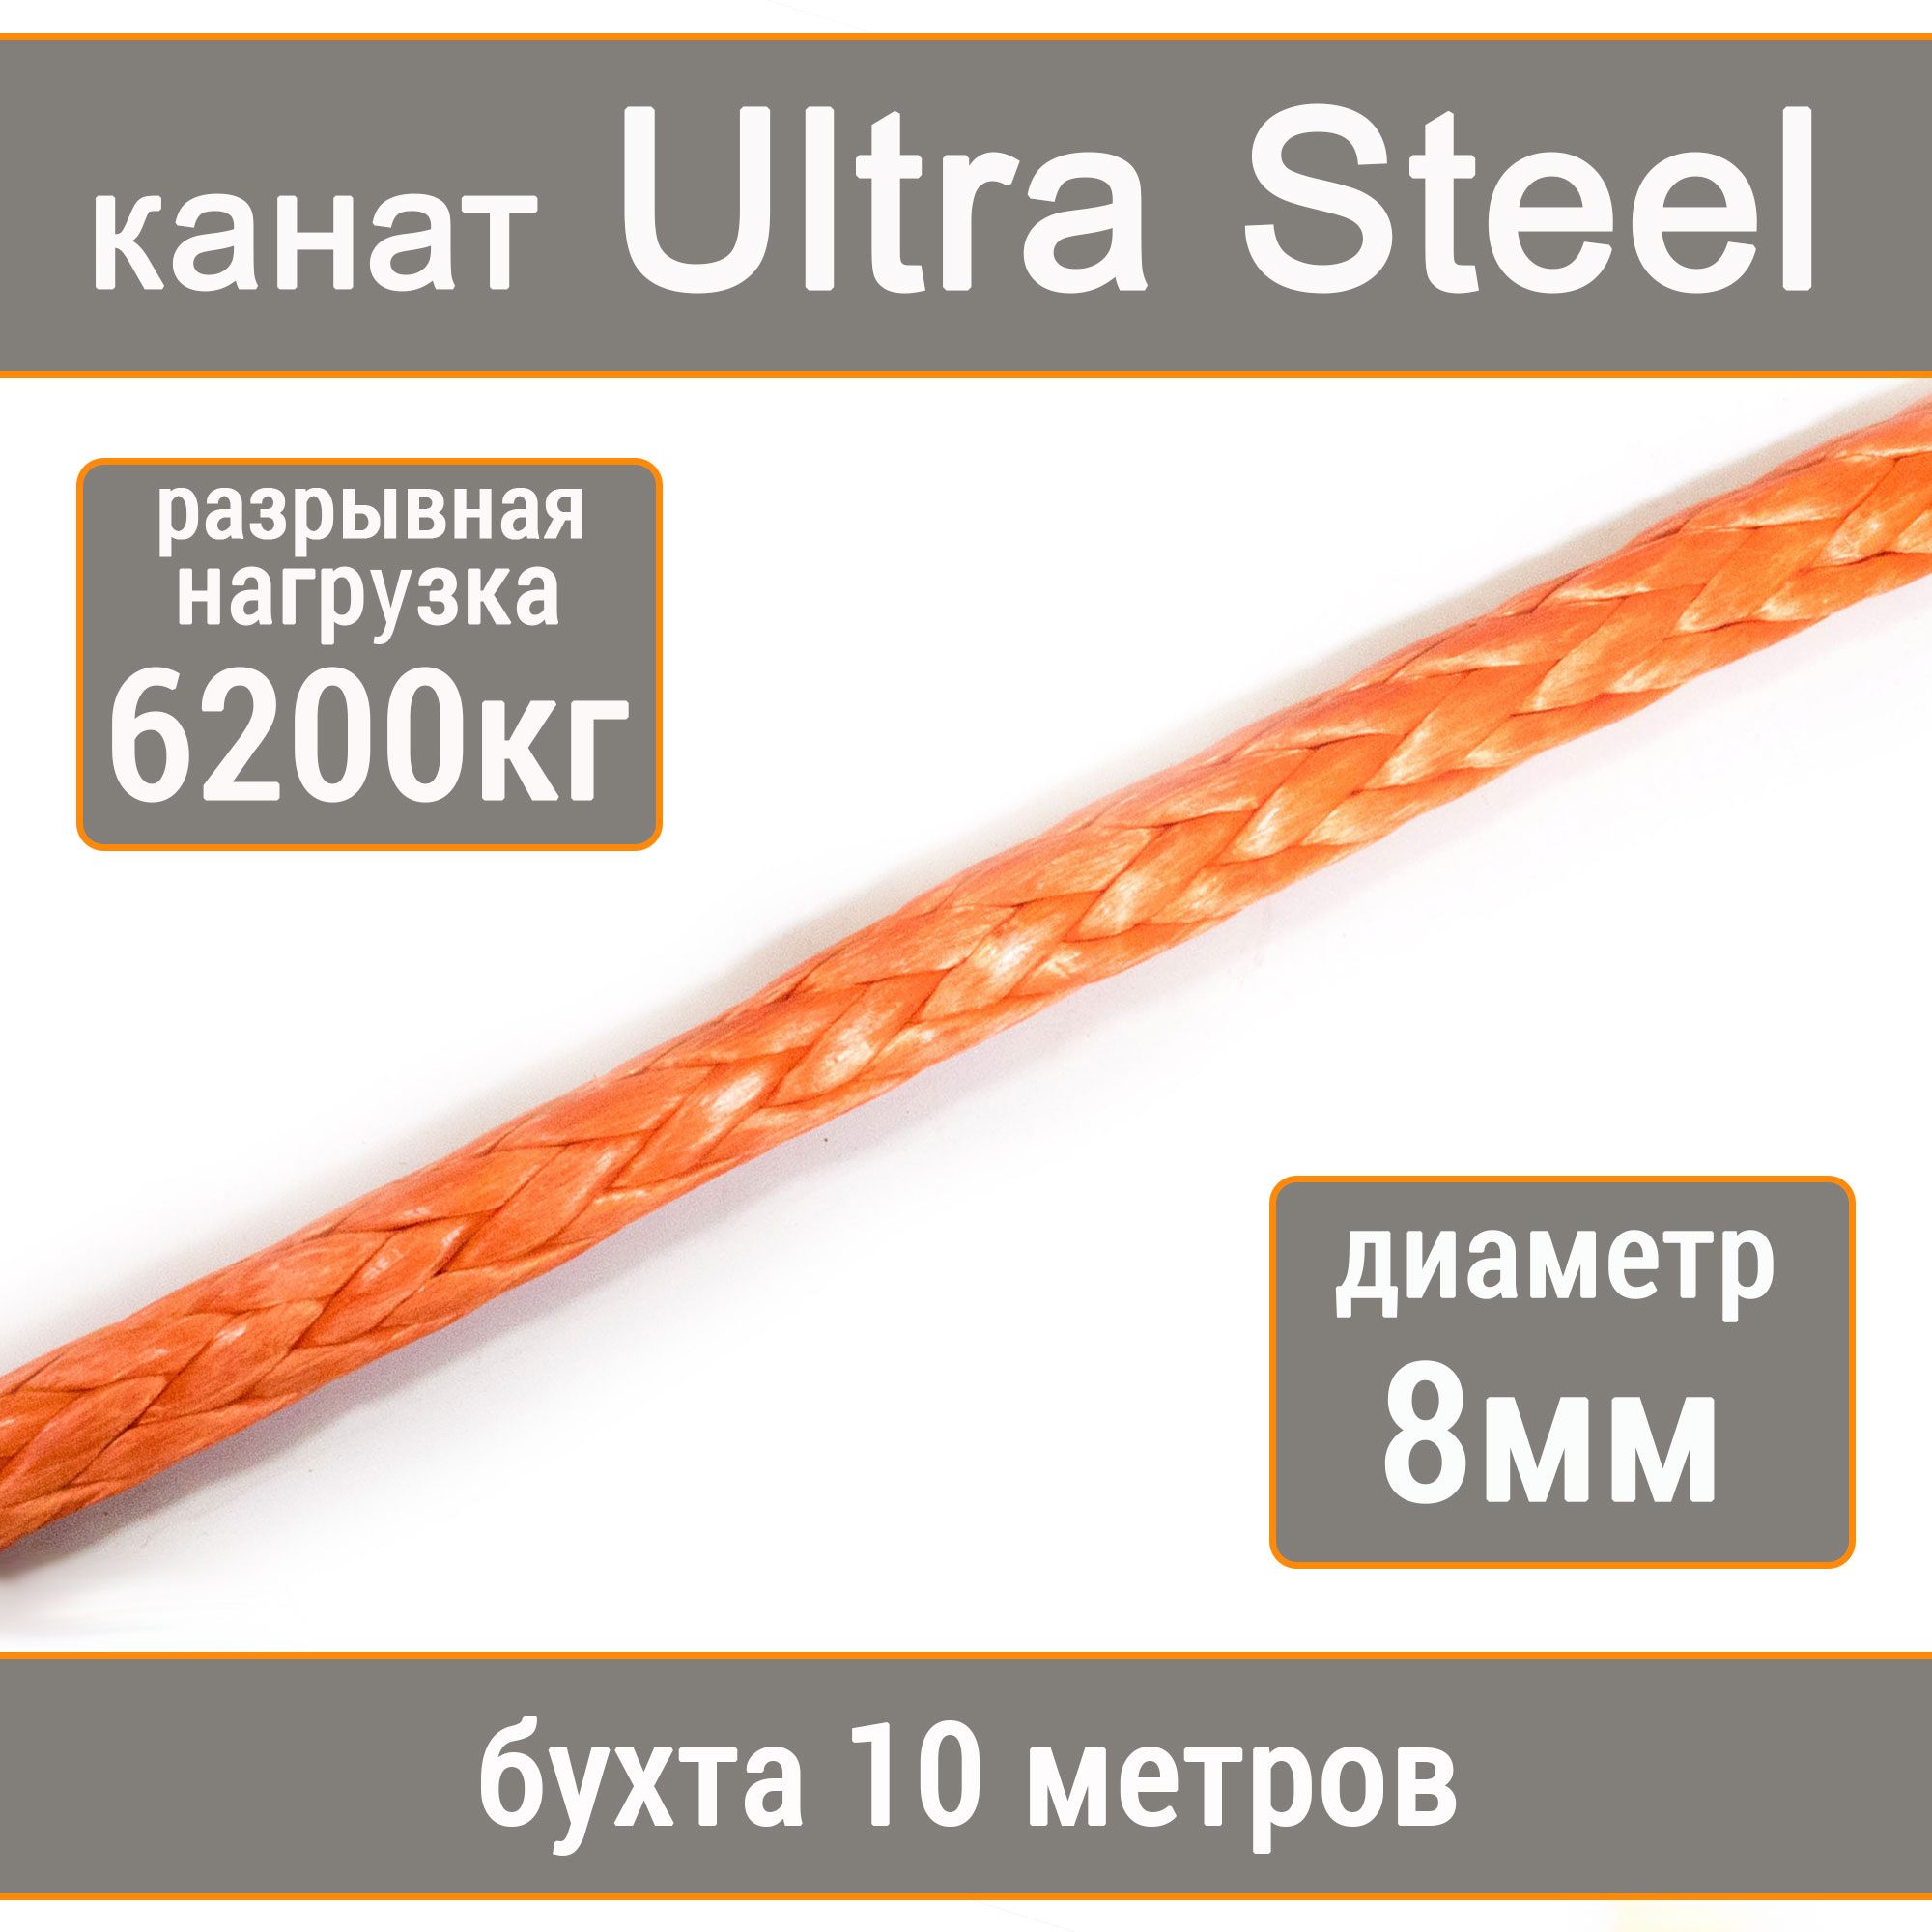 Высокопрочный синтетический канат UTX Ultra Steel 8мм р.н.6200кг, 007654321-108 манильский канат щит мт d 8 мм на кат 200 мм 160 м 66879